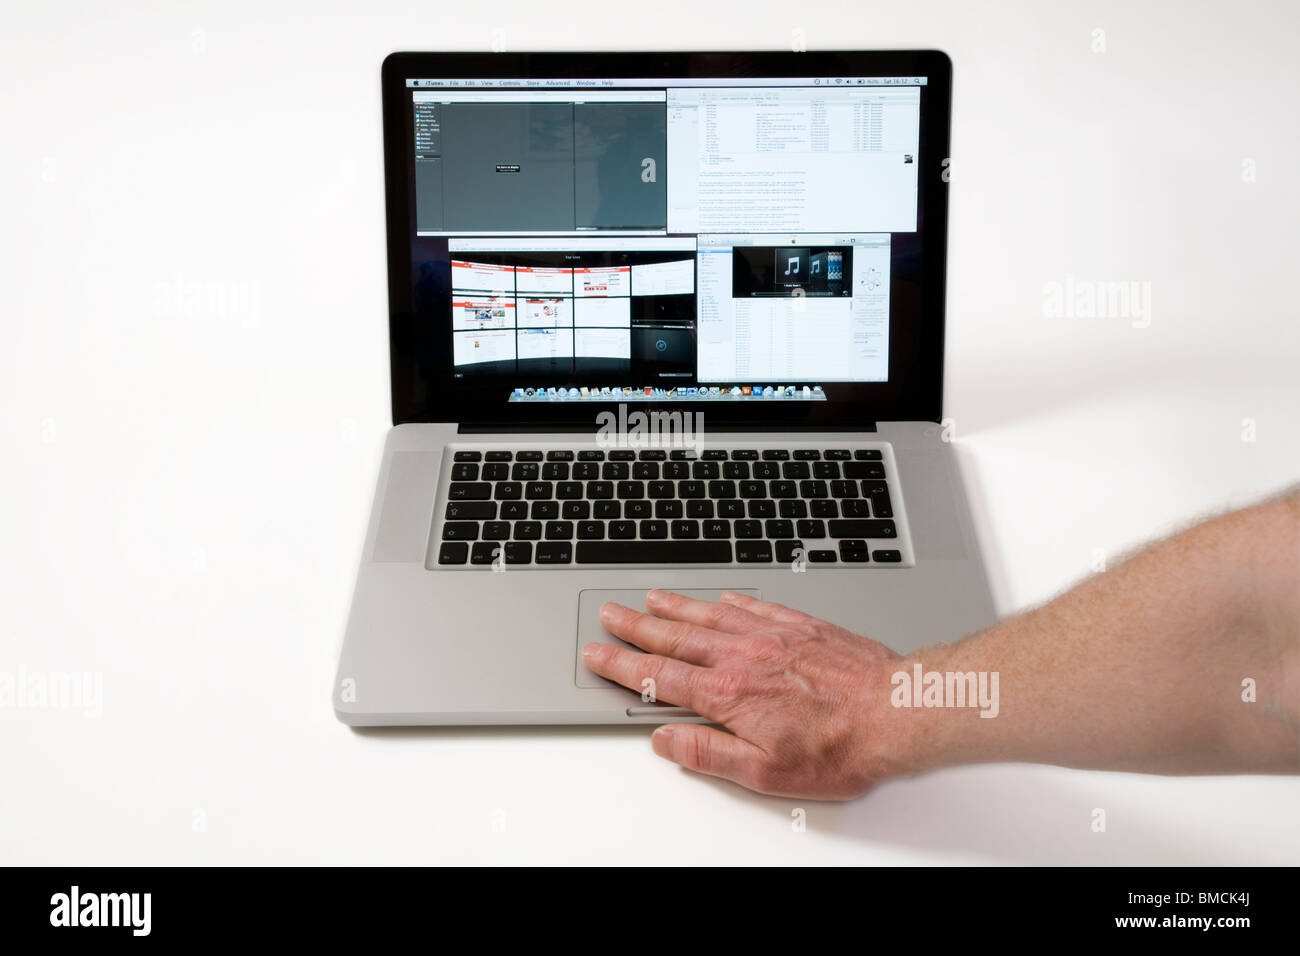 Pour les mains et les doigts se déplaçant à travers un iBook Macbook Pro / trackpad TrackPad avec fonction de défilement / pavé tactile sur un portable Apple / ordinateur portable Banque D'Images